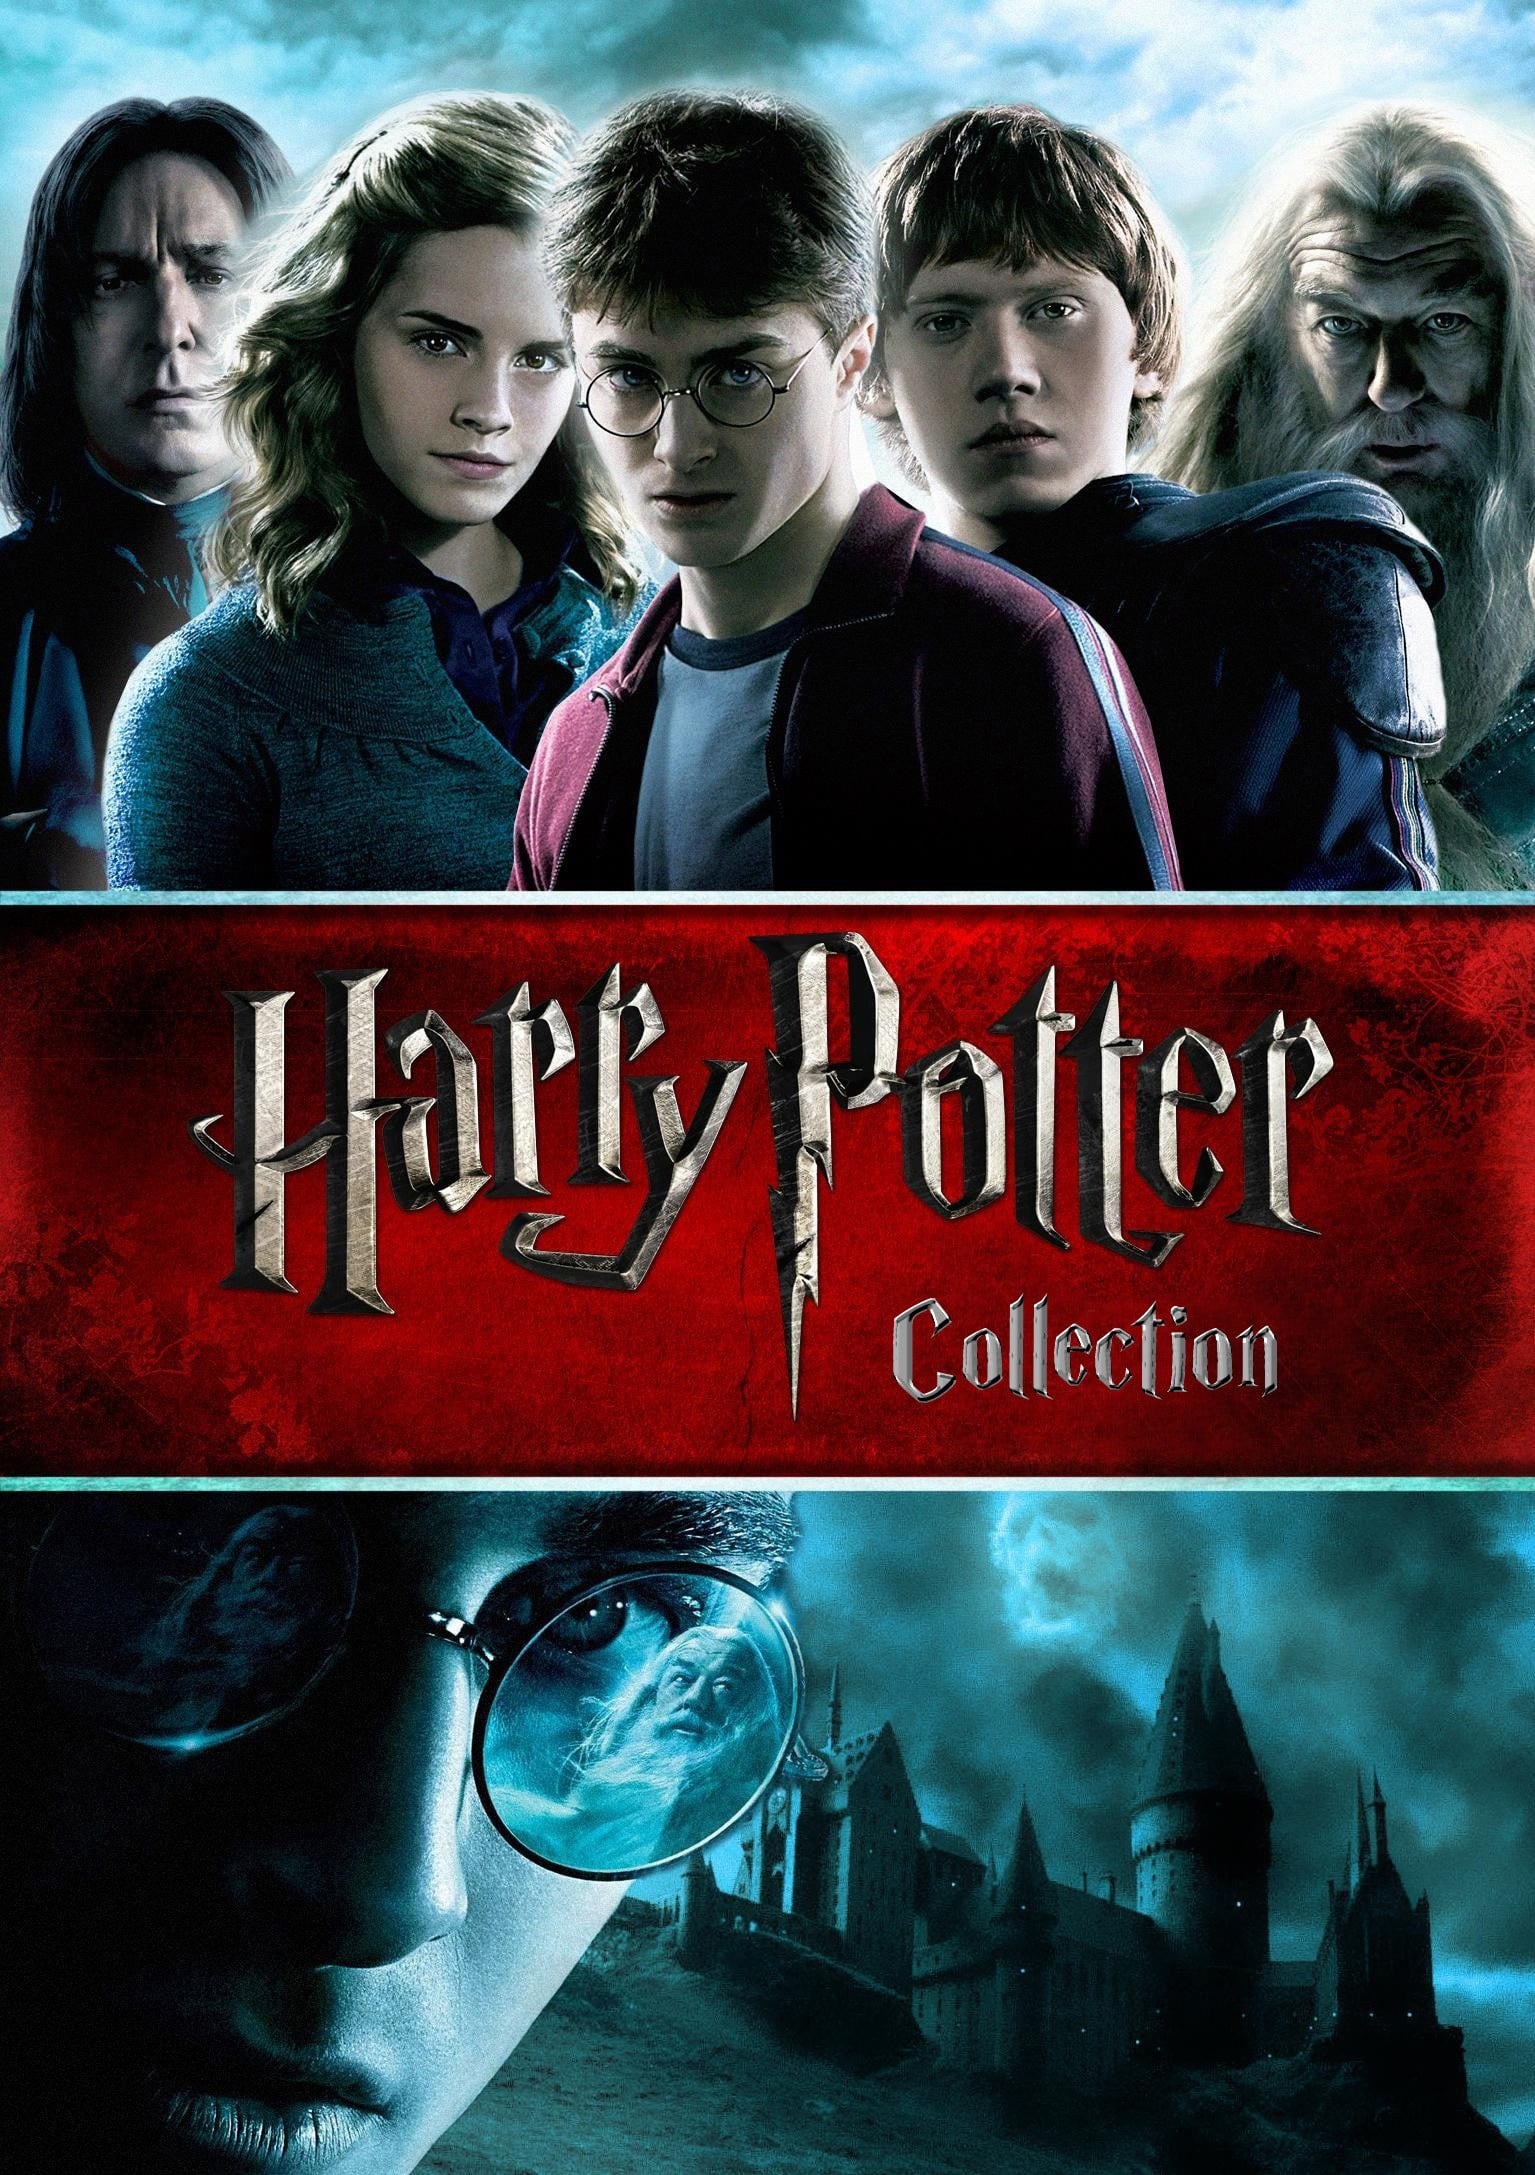 Tous les films de la saga Harry Potter Collection sont sur fr.film-cine.com